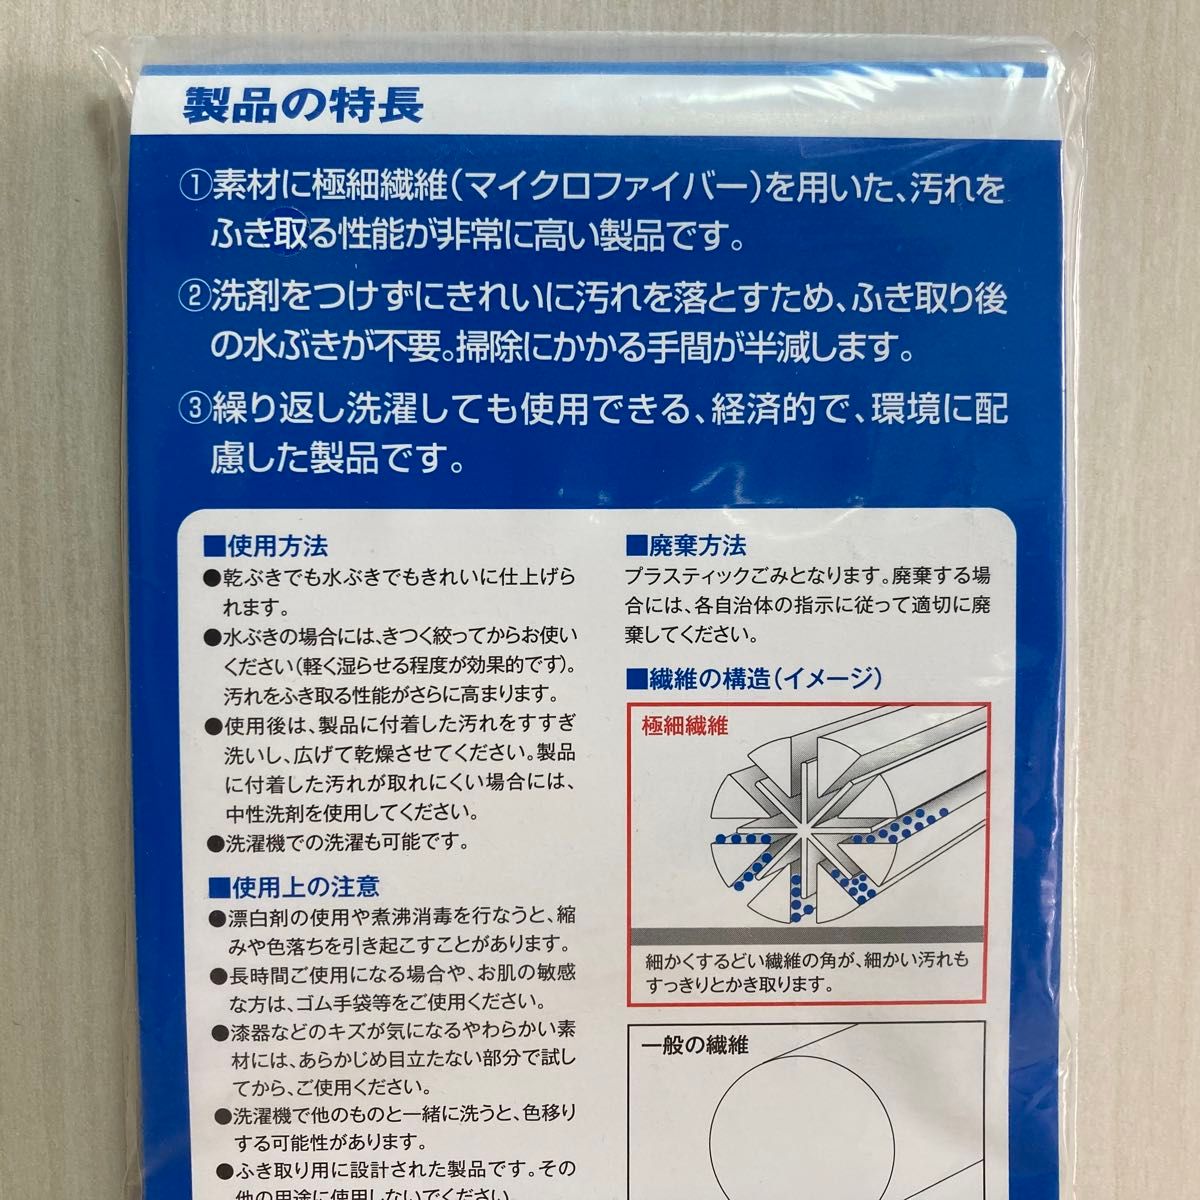 3M スリーエム スコッチブライト 高耐久ふきん No.2012 業務用 ブルー 青 フキン 